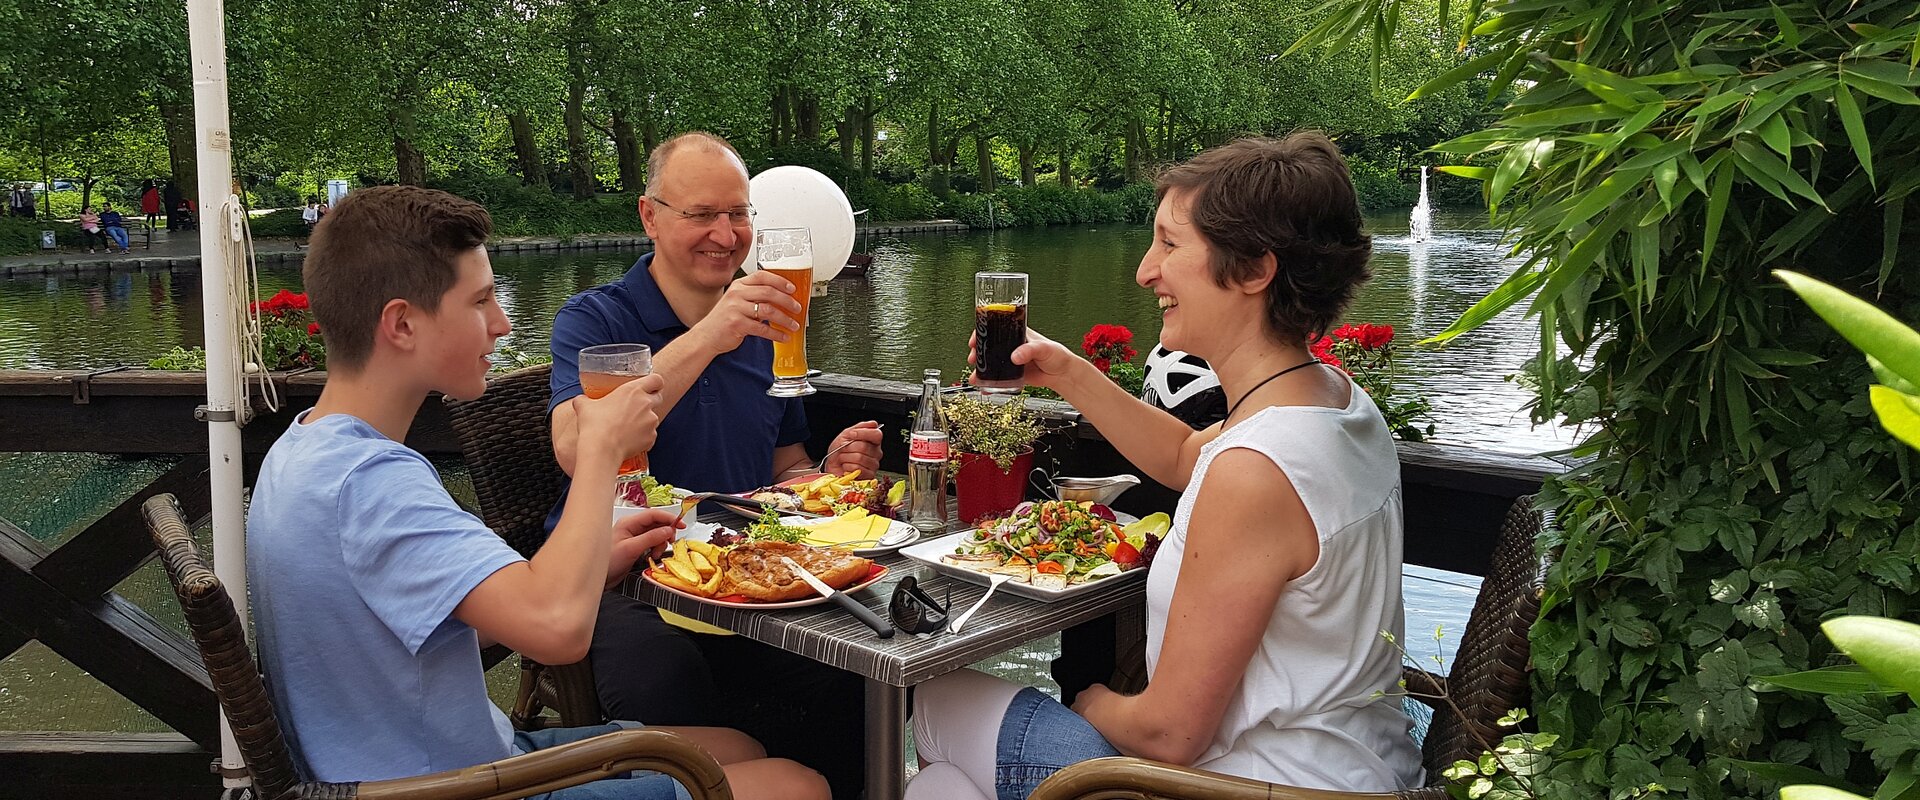 Eine sommerlich gekleidete Familie sitzt an einem mit Essen gedeckten Tisch auf einer Außenterasse eines Gastronomiebetriebes und prostet sich mit ihren Getränken zu